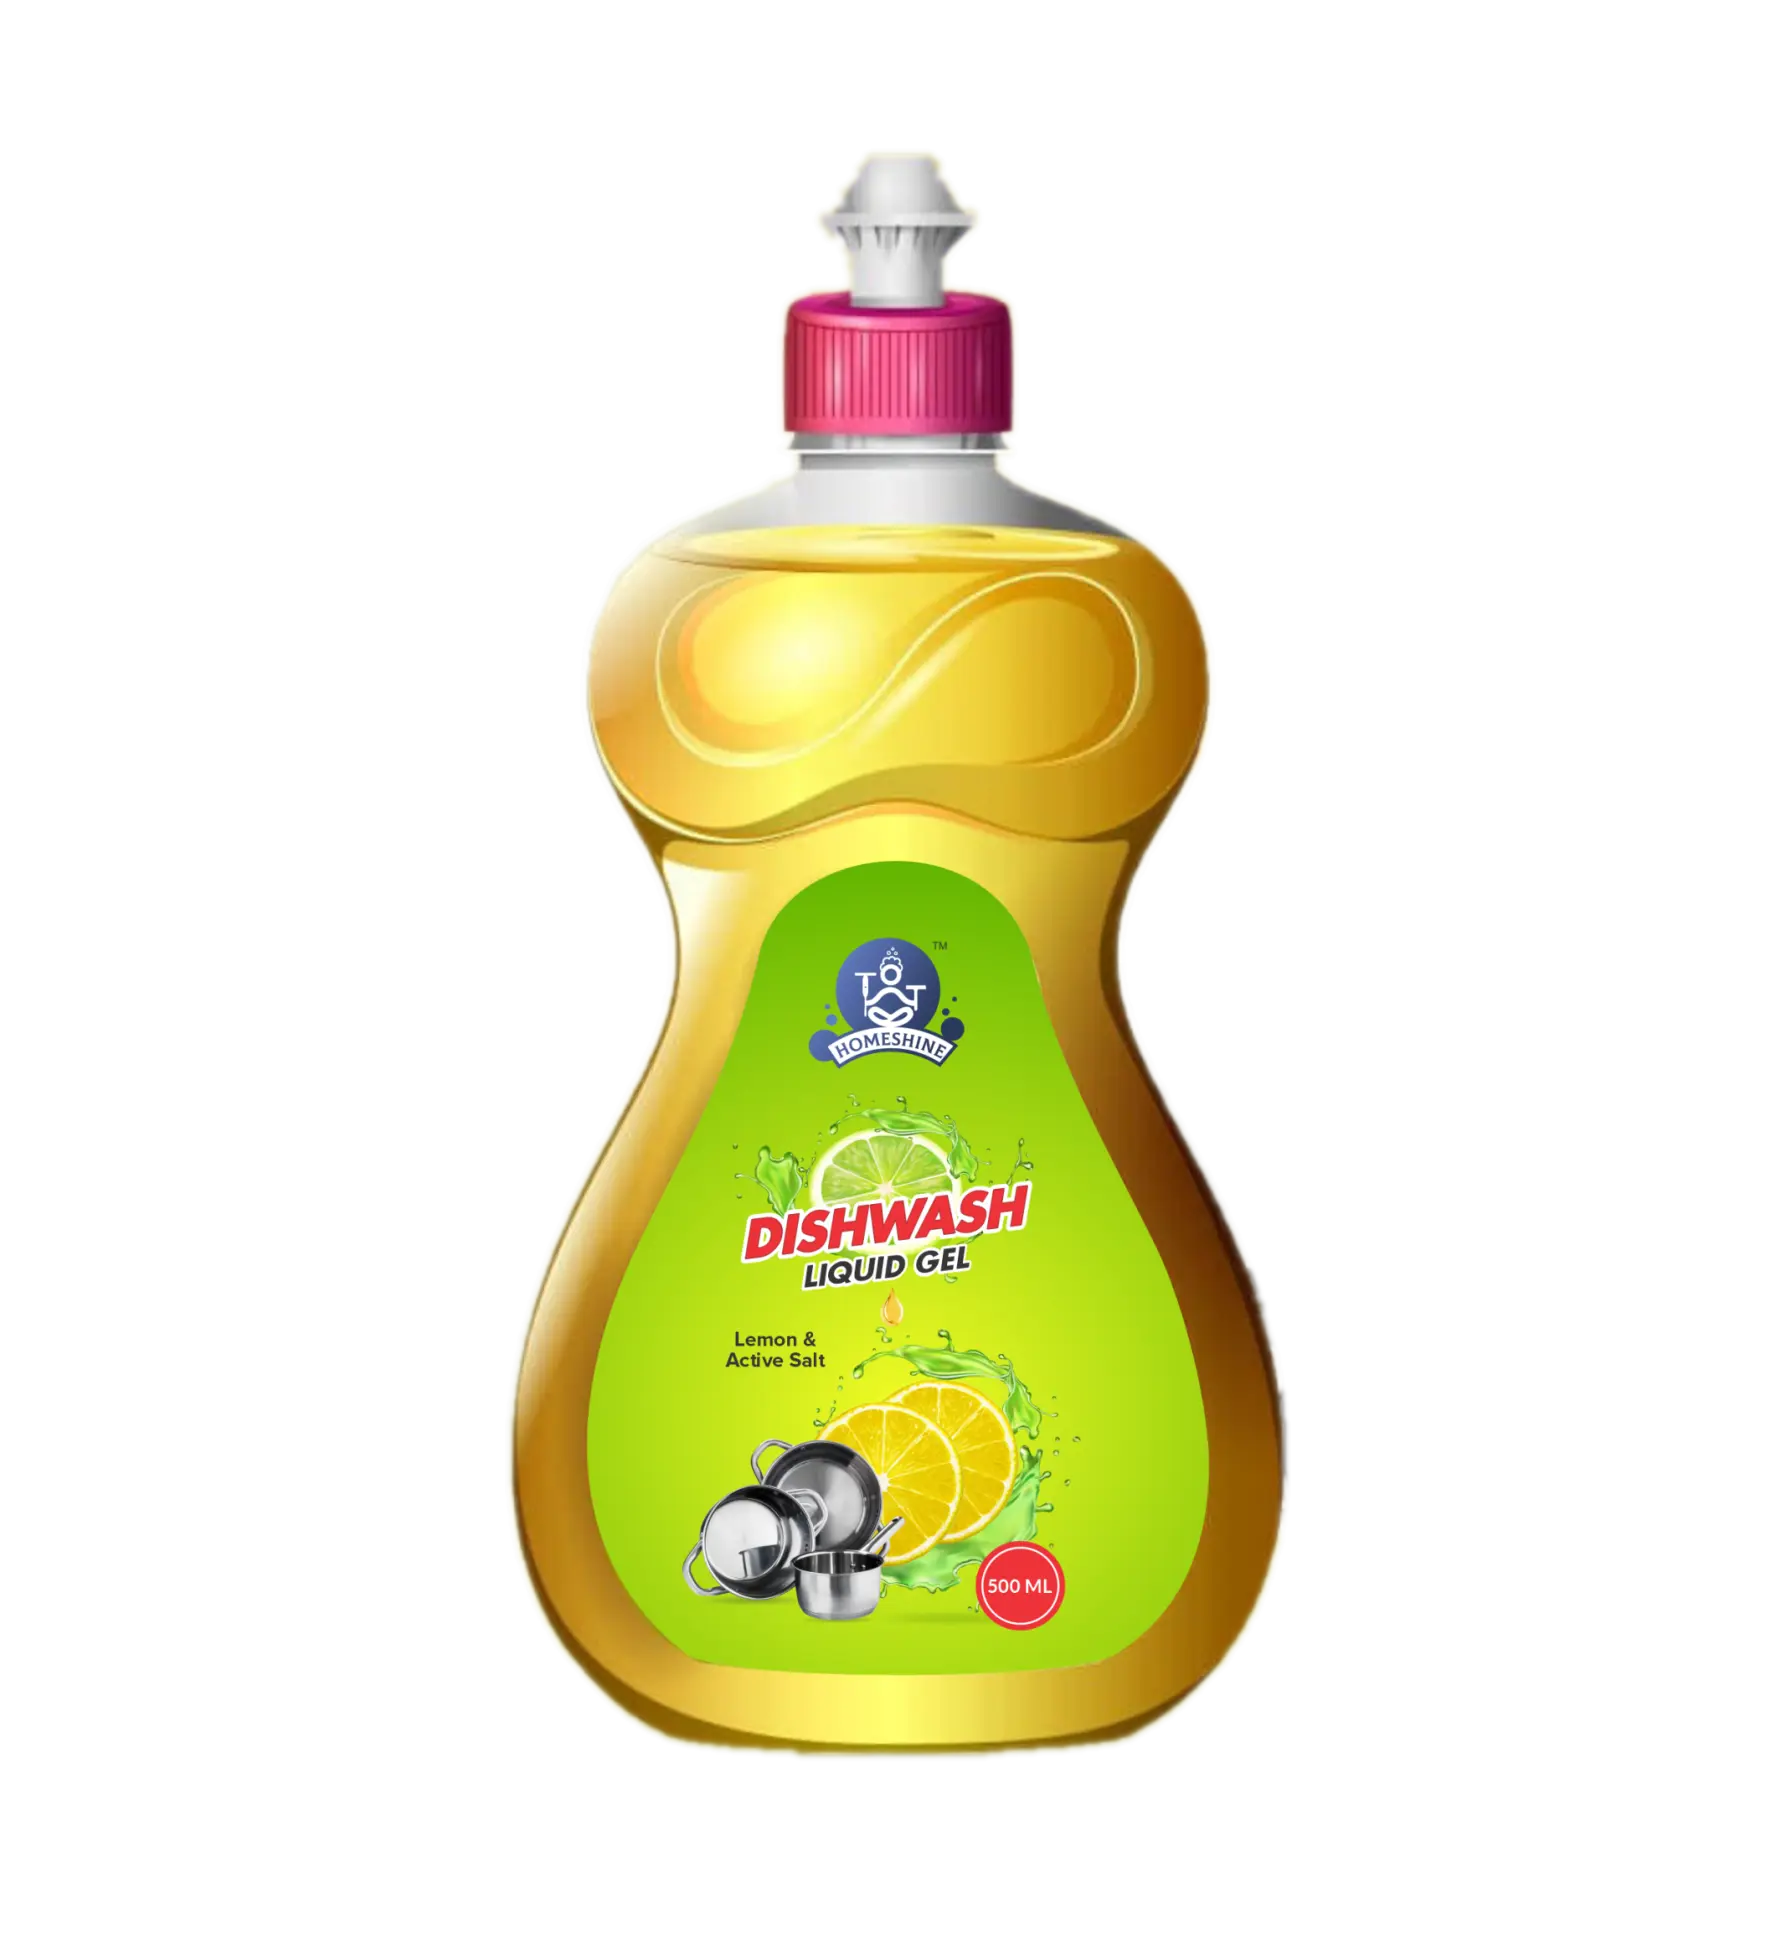 Homeshine Dishwash Gel - best liquid stain remover